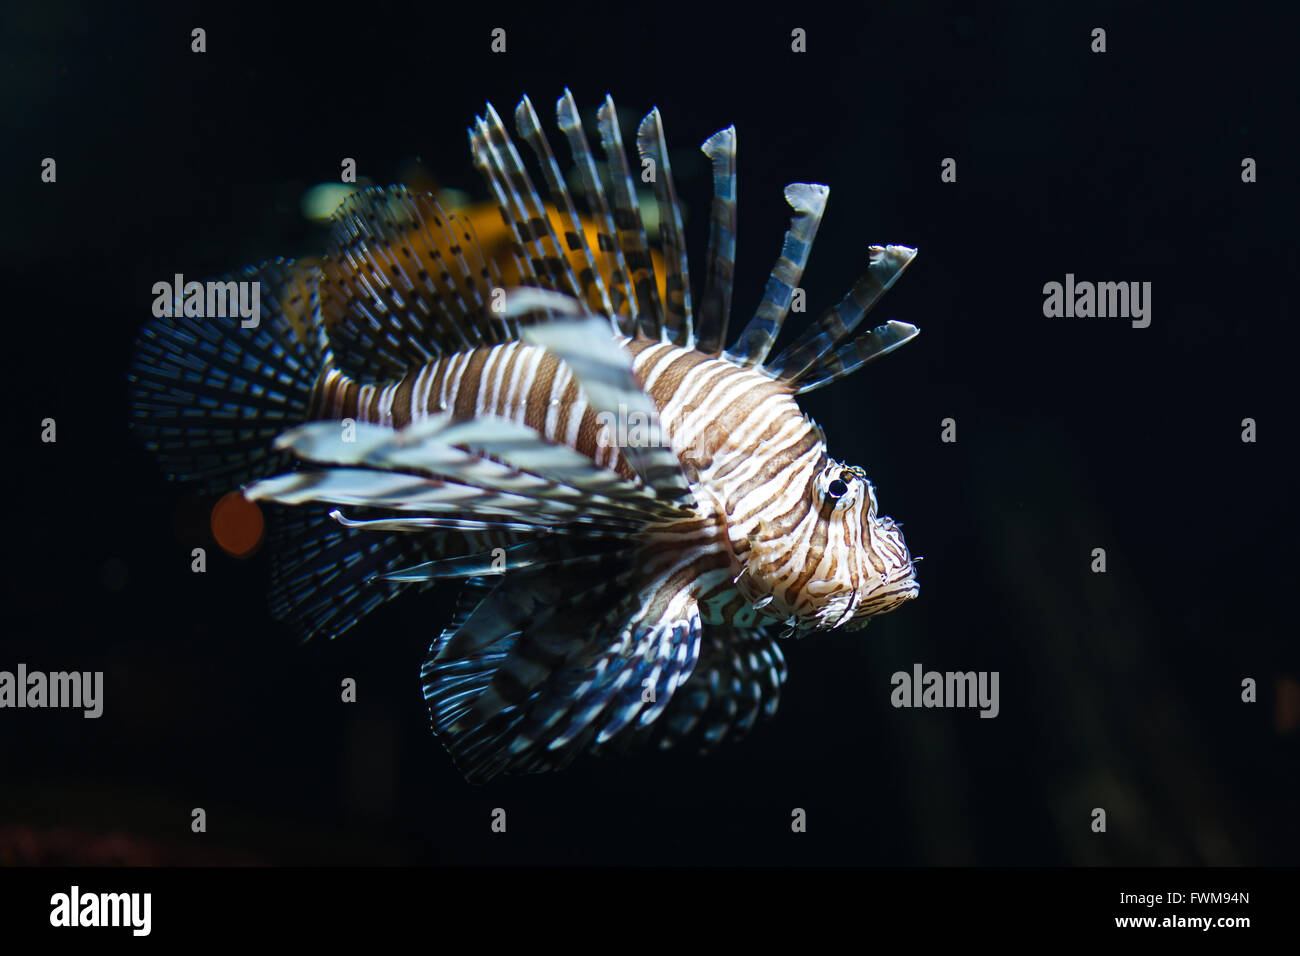 Zebra Lion Fish in Black Aquarium Background Stock Image - Image of  lionfish, aquarium: 167803771